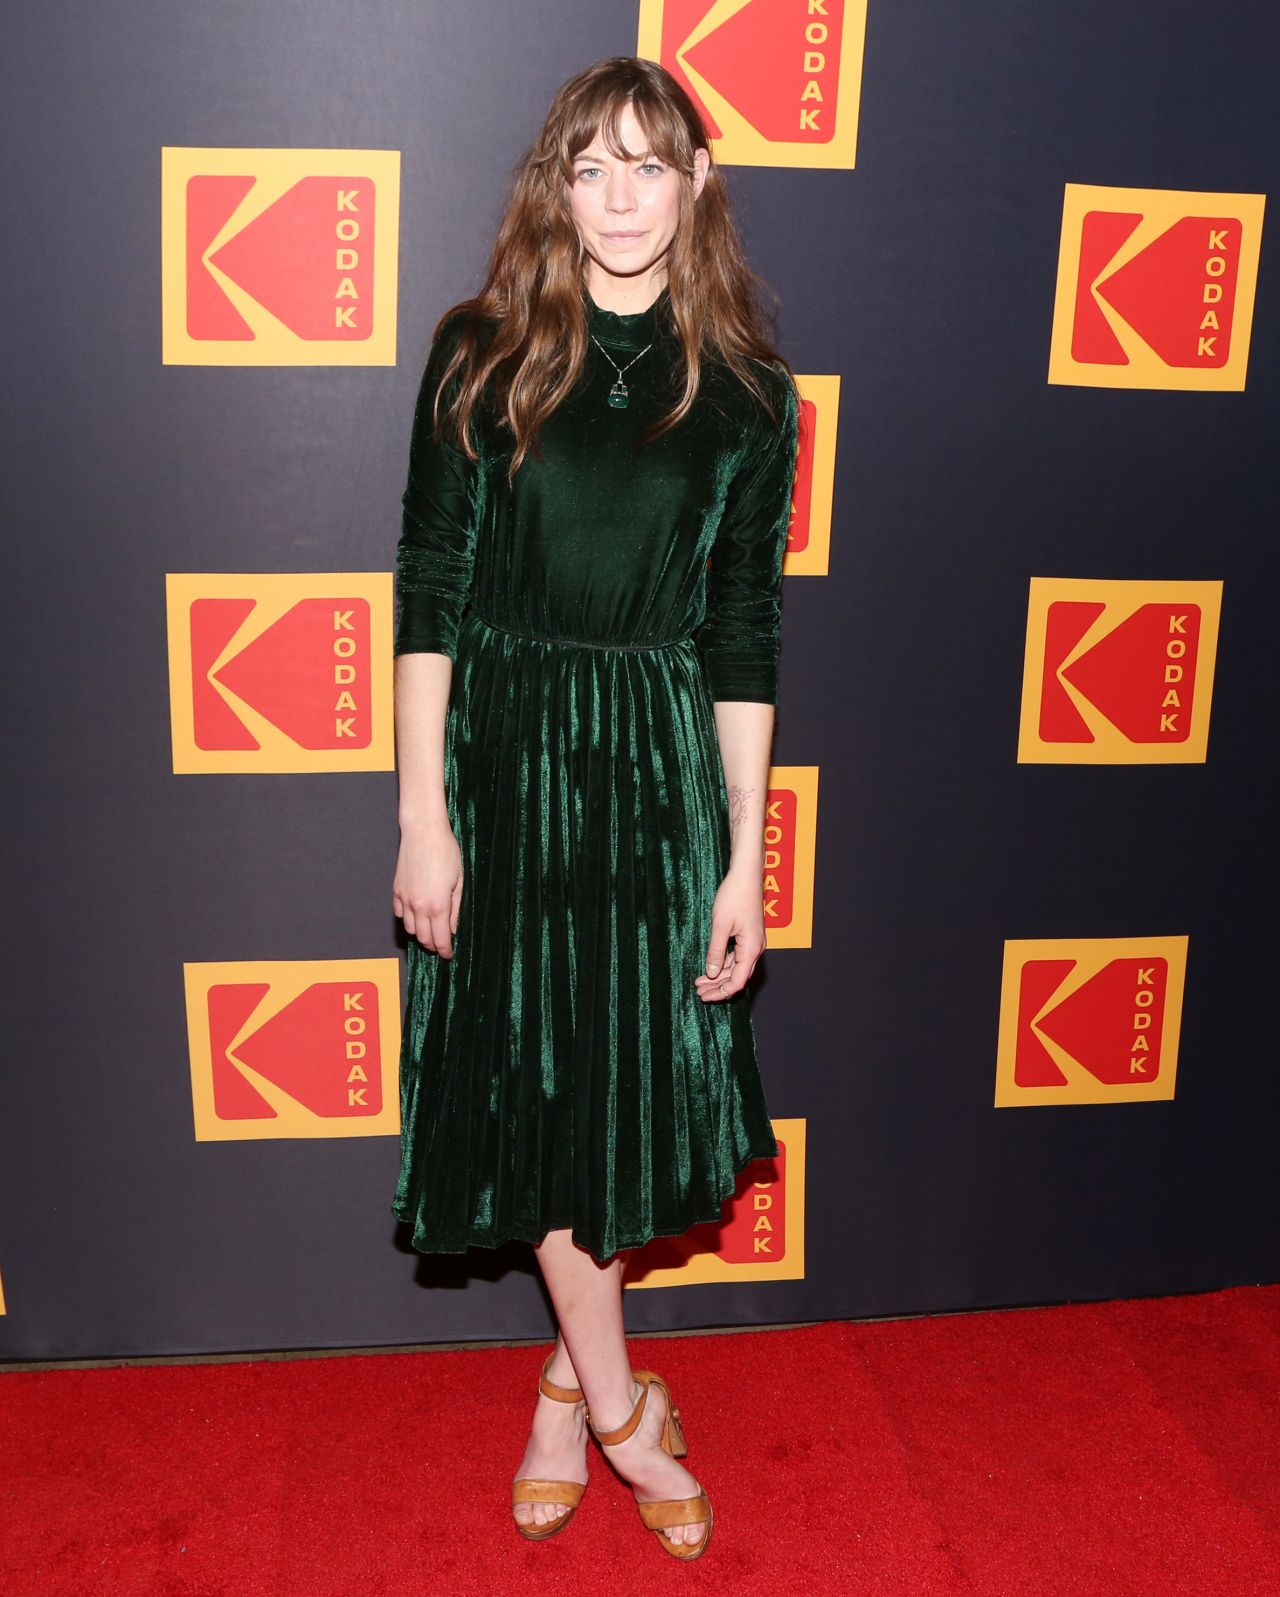 Analeigh Tipton 2019 Kodak Film Awards • Celebmafia